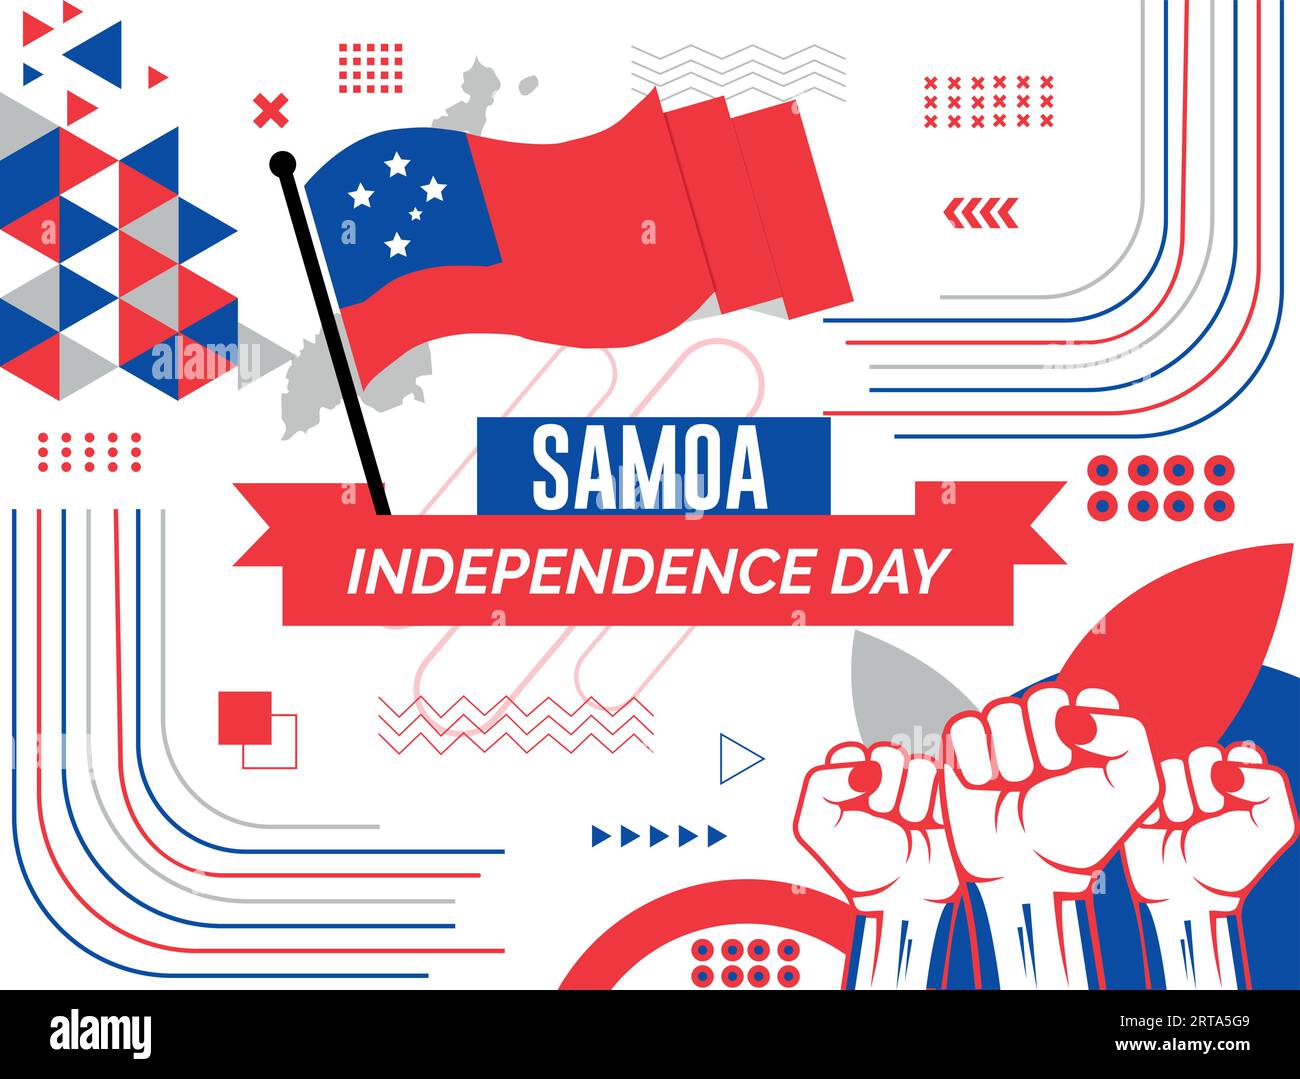 Bannière de fête nationale SAMOA avec carte, fond de thème de couleurs de drapeau et design coloré moderne abstrait rétro géométrique avec des mains levées ou des poings. Illustration de Vecteur